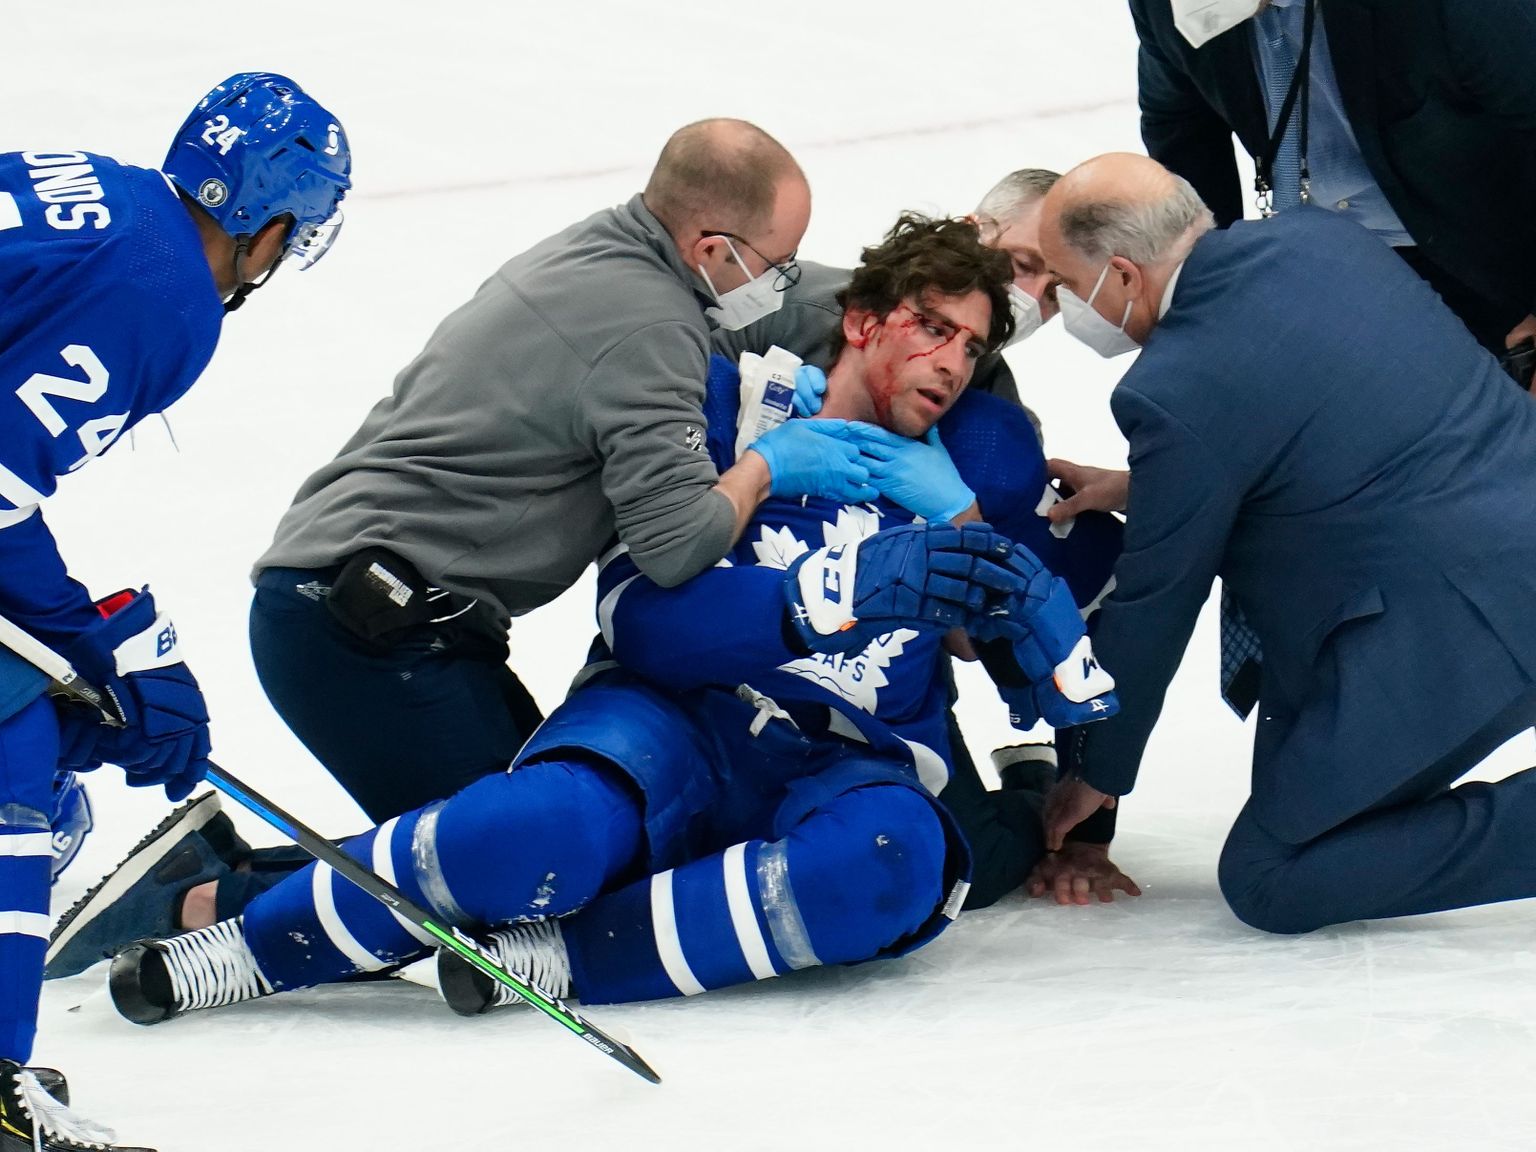 Läinud ööl peetud NHLi play off kohtumises sai kohutaval viisil vigastada Toronto meeskonna kapten John Tavares.